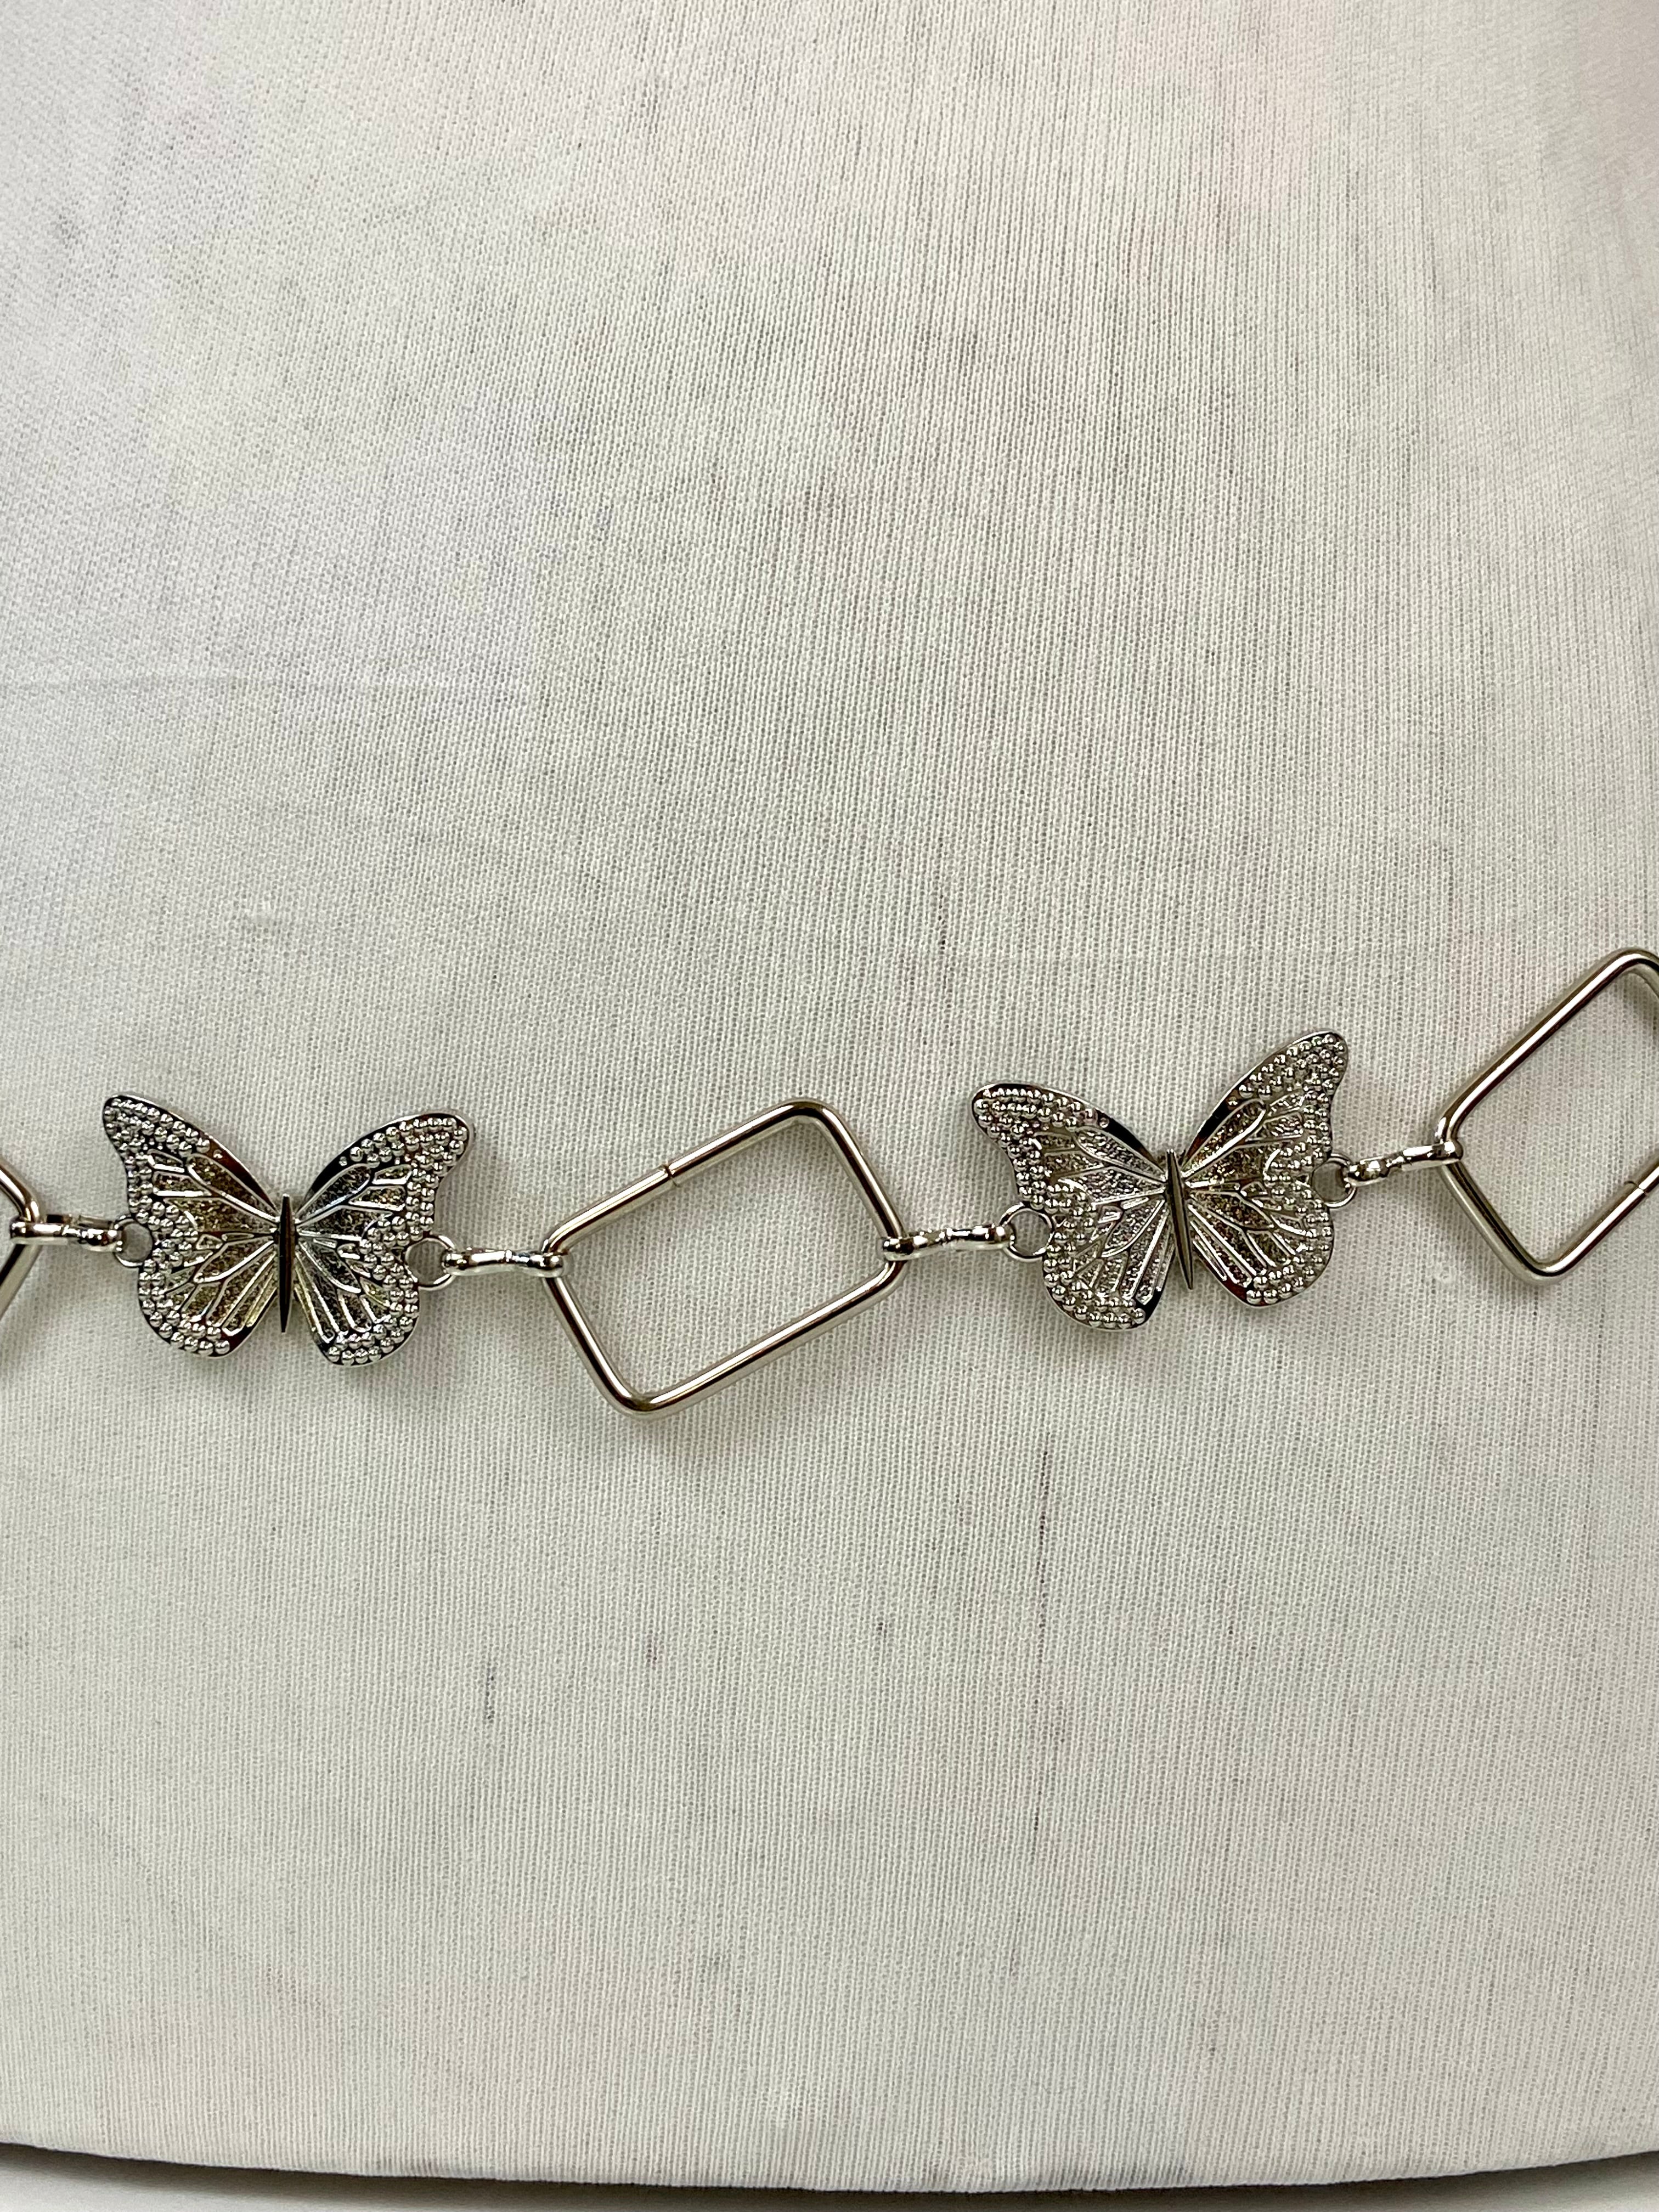 My little butterfly 🦋 belt